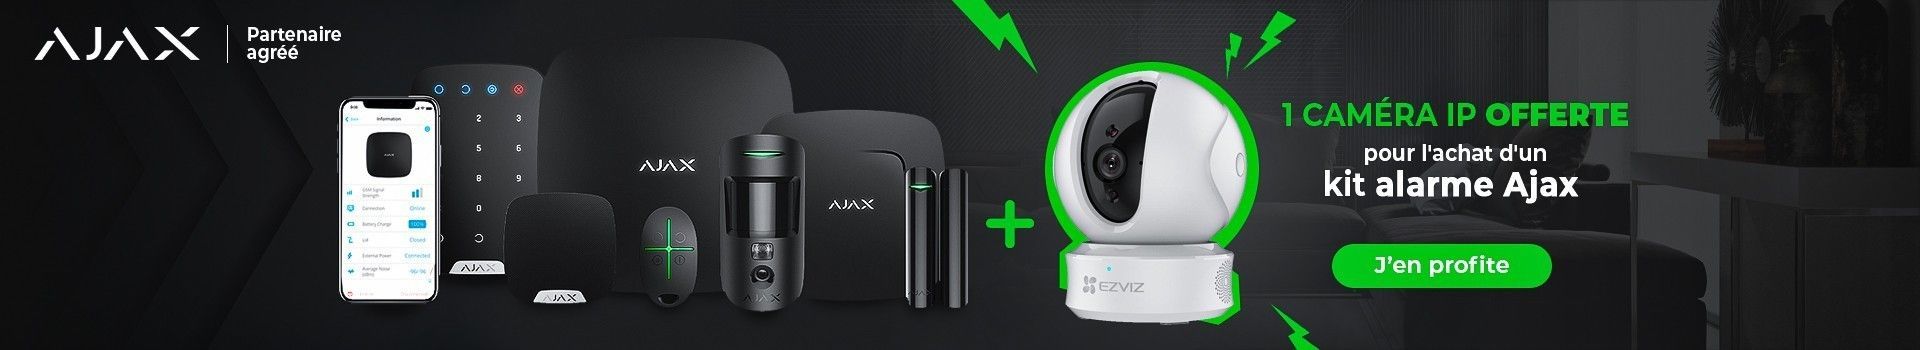 Une caméra offerte pour l'achat d'un KIt alarme de maison Ajax